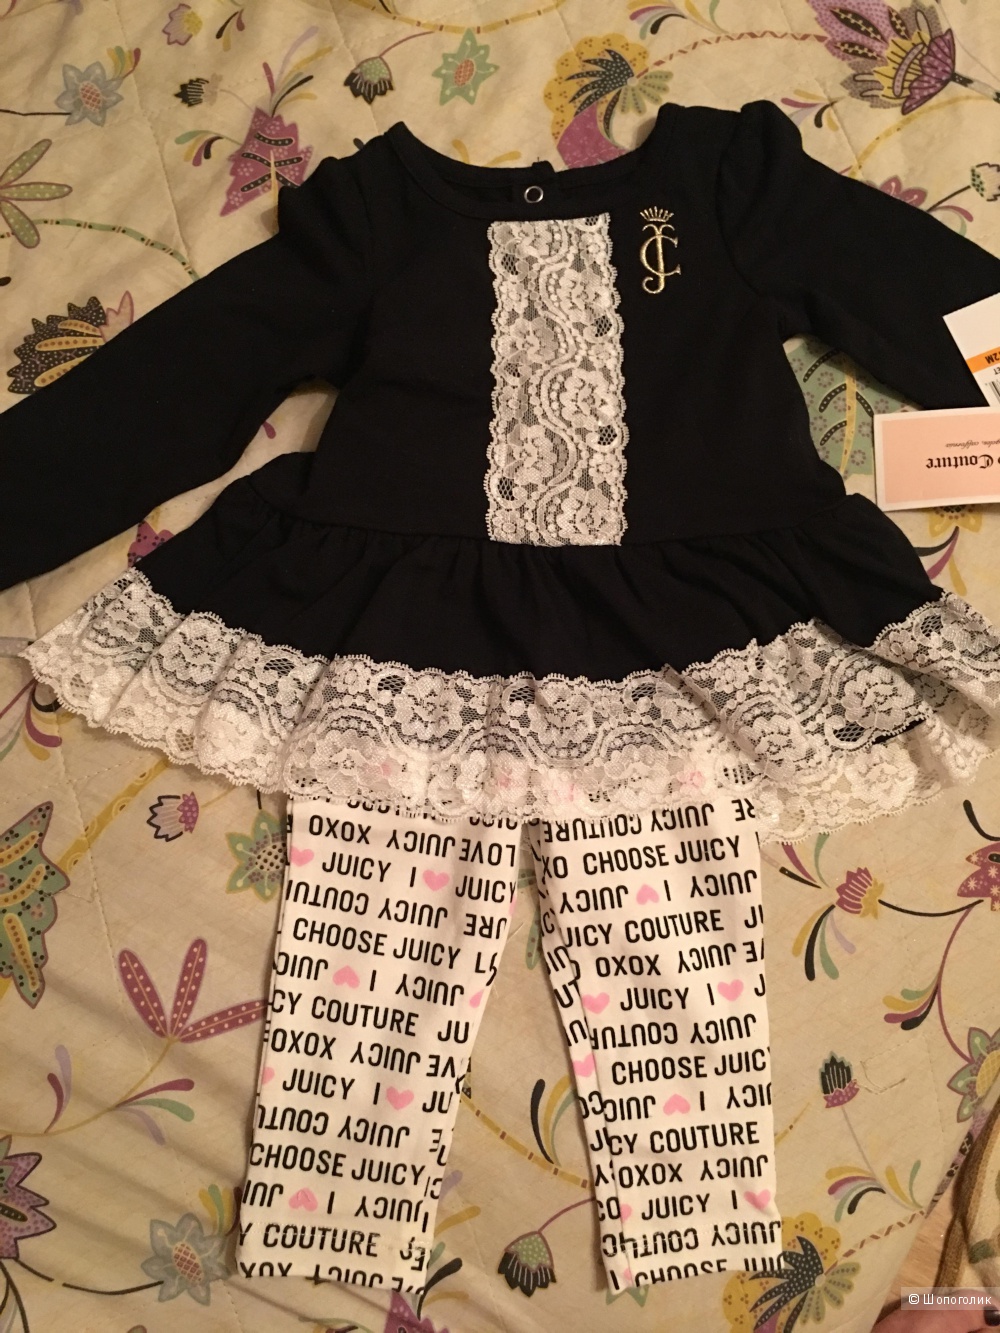 Комплект Juicy Couture (туника +леггинсы) на девочку 12 месяцев. Оригинал, куплен в Америке. Новый с бирками.